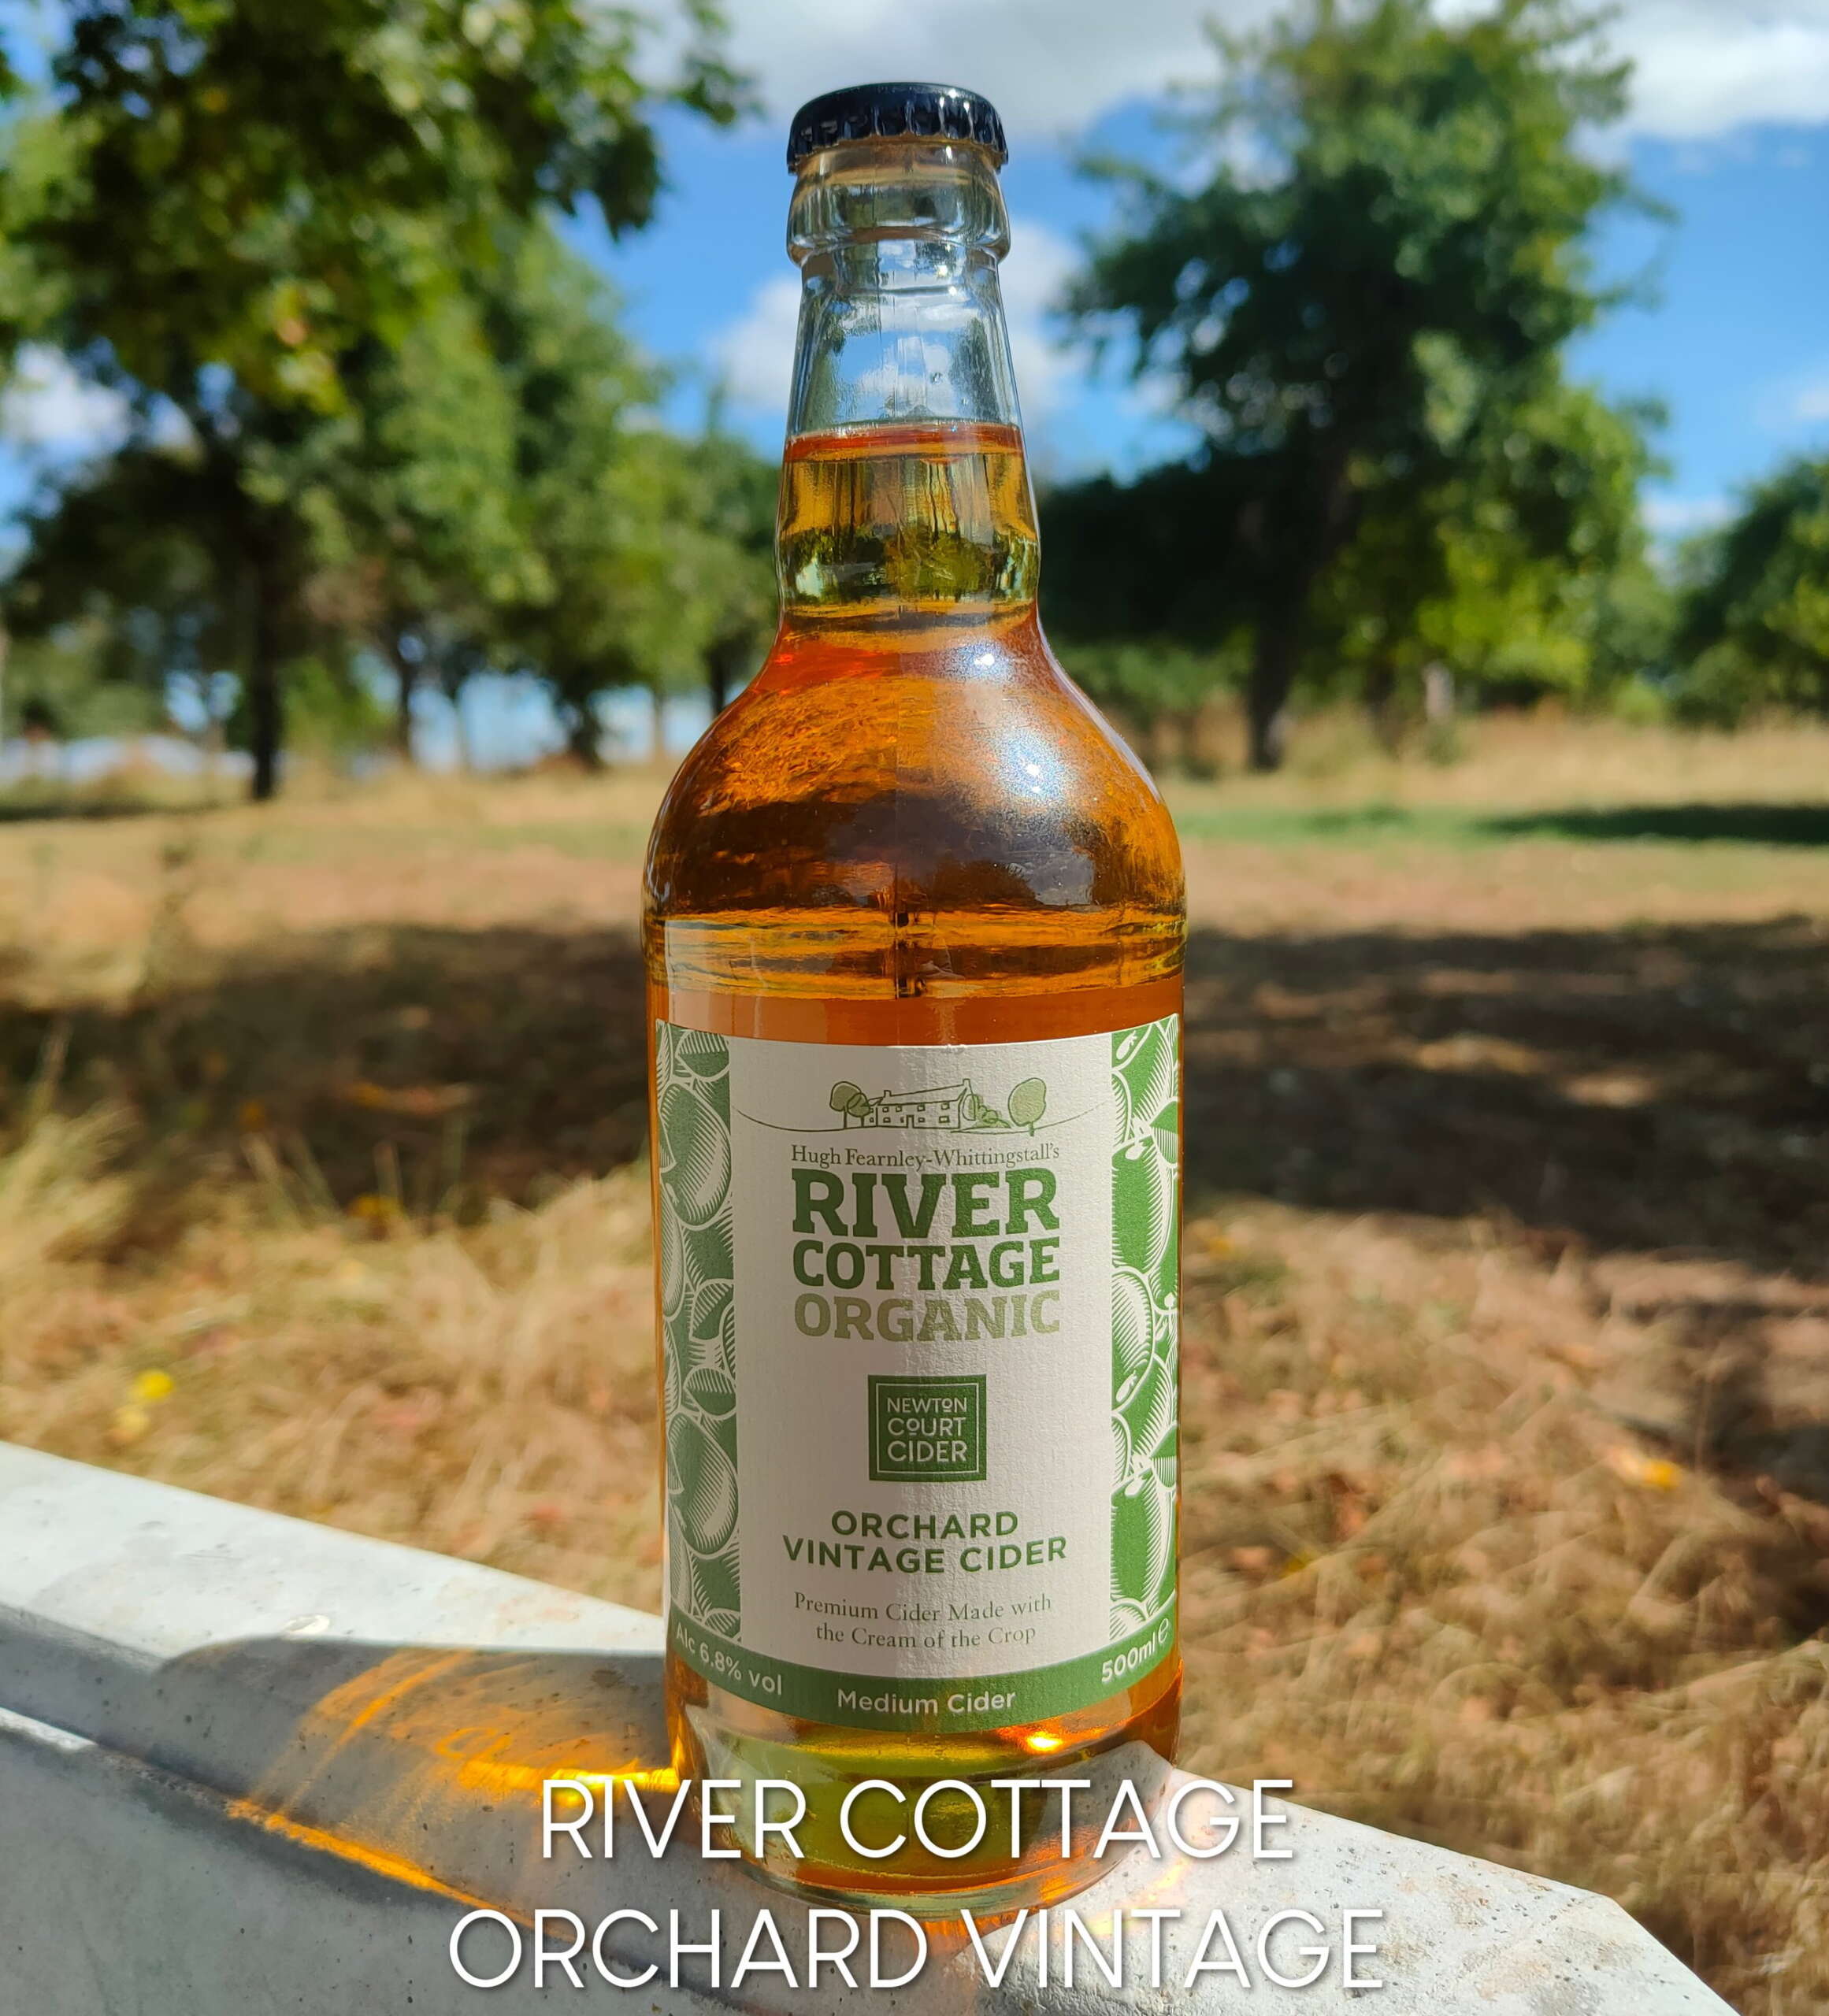 River Cottage Orchard Vintage